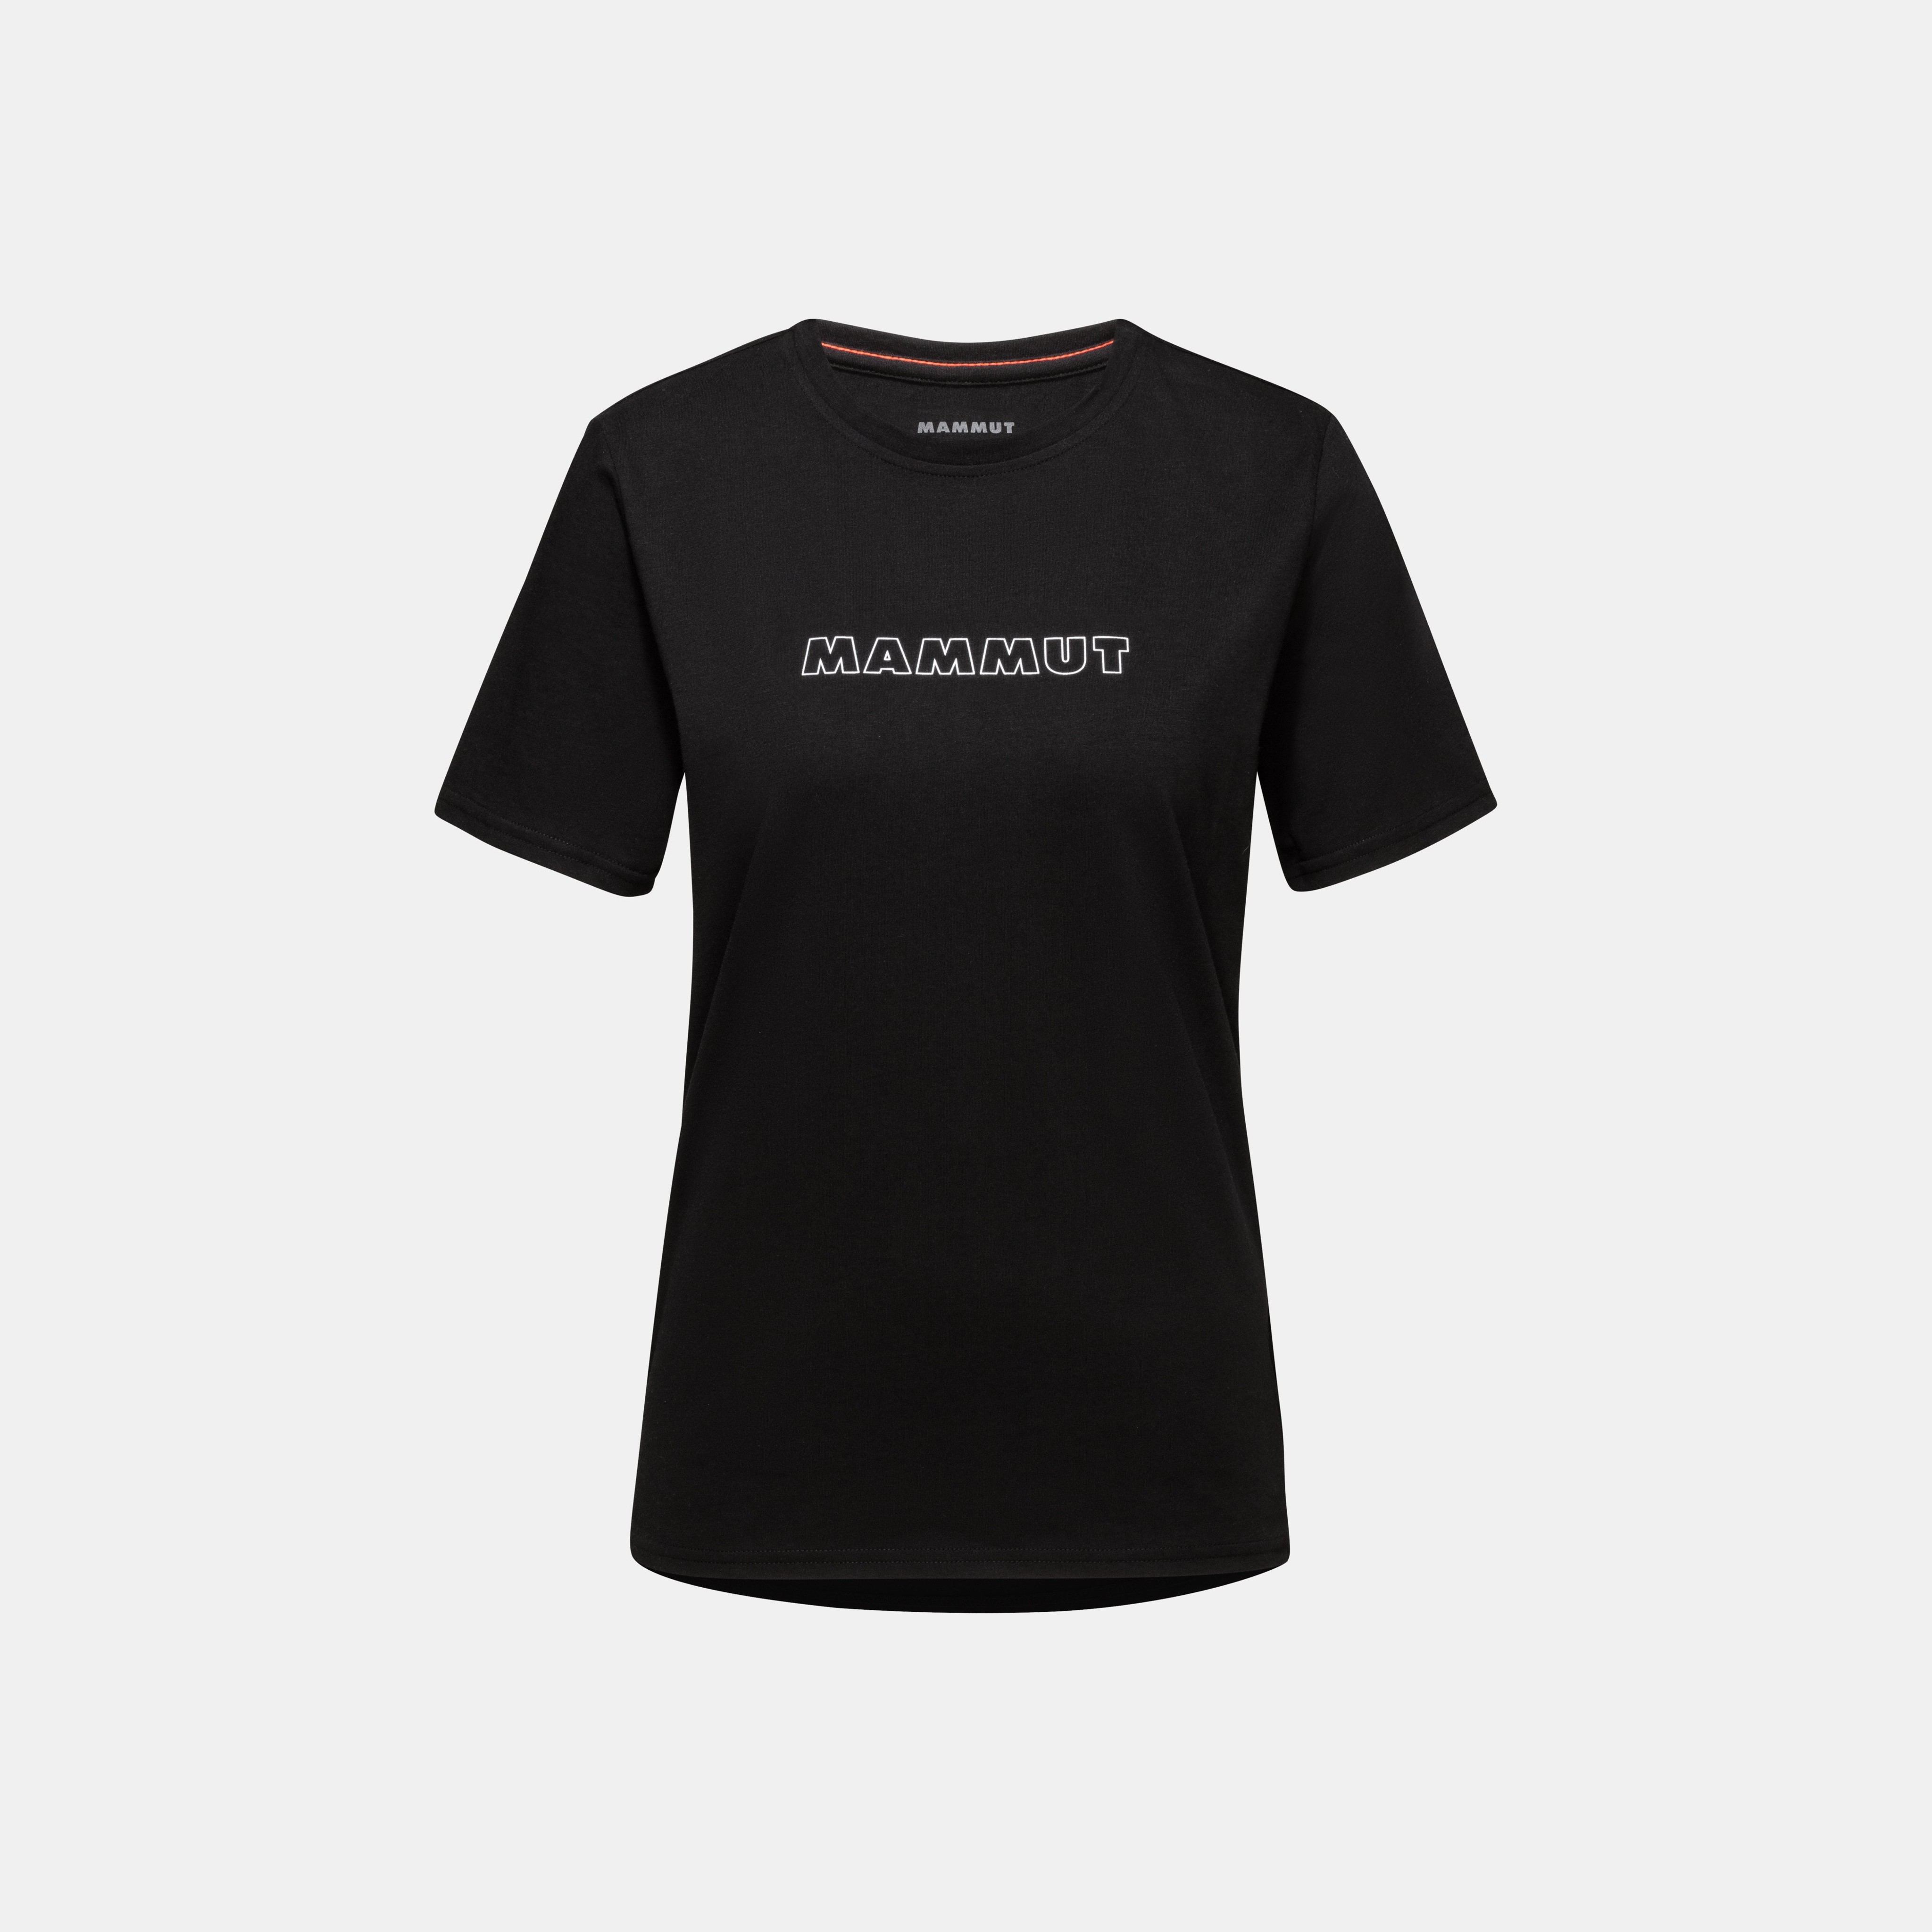 Mammut Core T-Shirt Women Logo product image